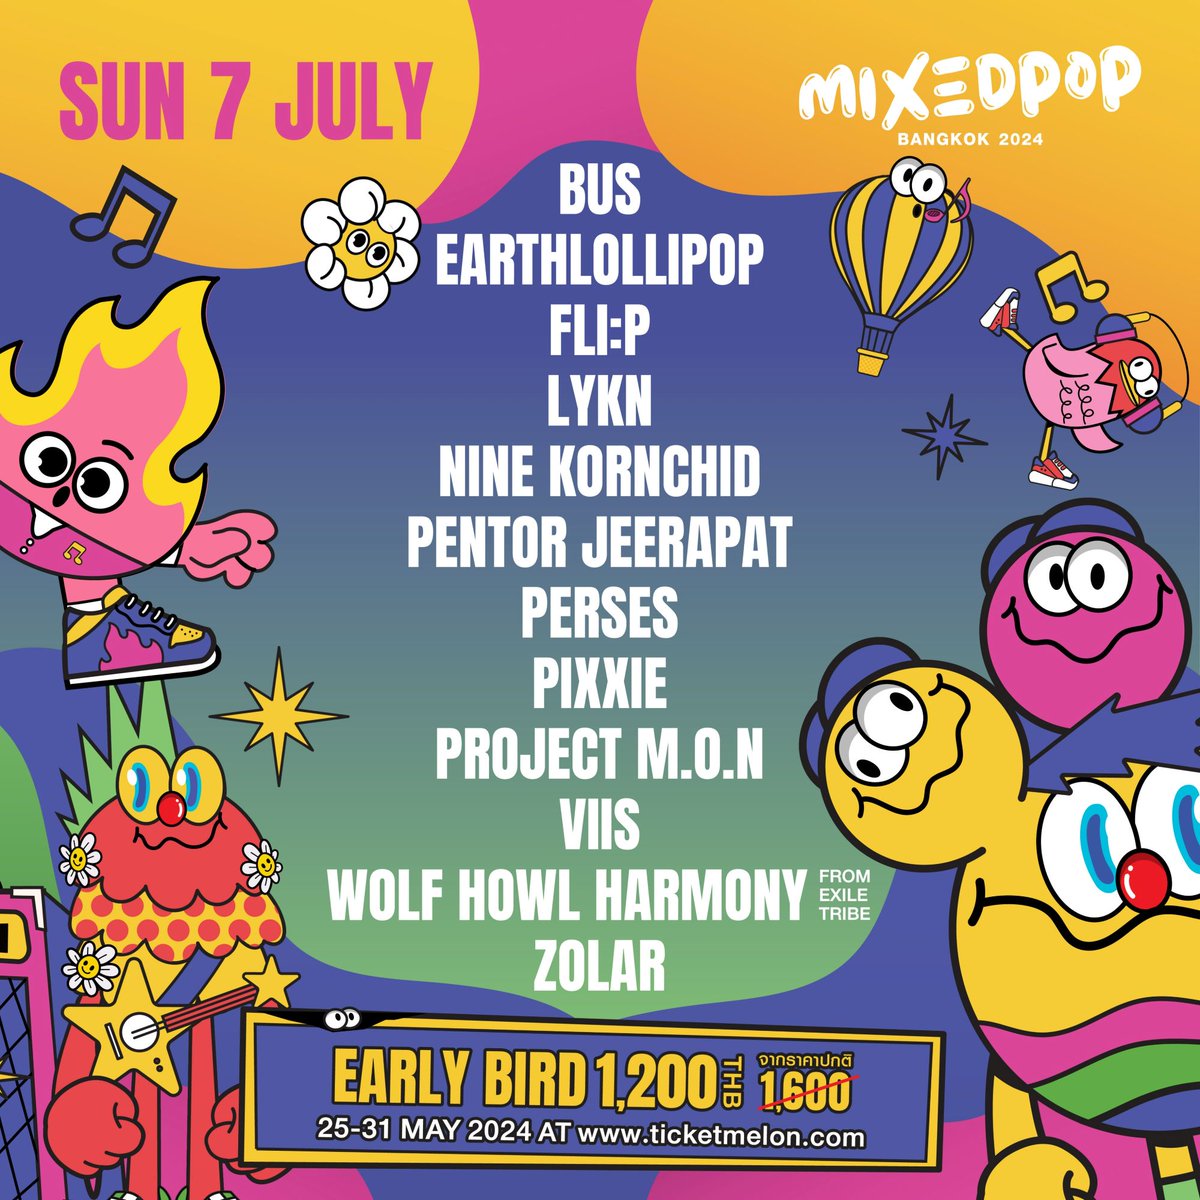 ครั้งแรกของ ‘RS Music’ กับ ‘MIXEDPOP BANGKOK 2024’ เทศกาลดนตรีเอเชี่ยนป๊อบกลางเมือง! ที่มิกซ์รวมทุกความป๊อปโดยไม่ได้นัดหมาย thestarsociety.com/69215  

ซื้อบัตร Early Bird ได้วันที่ 25 - 31 พ.ค.นี้  
#MIXEDPOP 
#MIXEDPOPFEST 
#MIXEDPOPBANGKOK2024 
#MUSICFESTIVAL 

LINE UP ศิลปิน